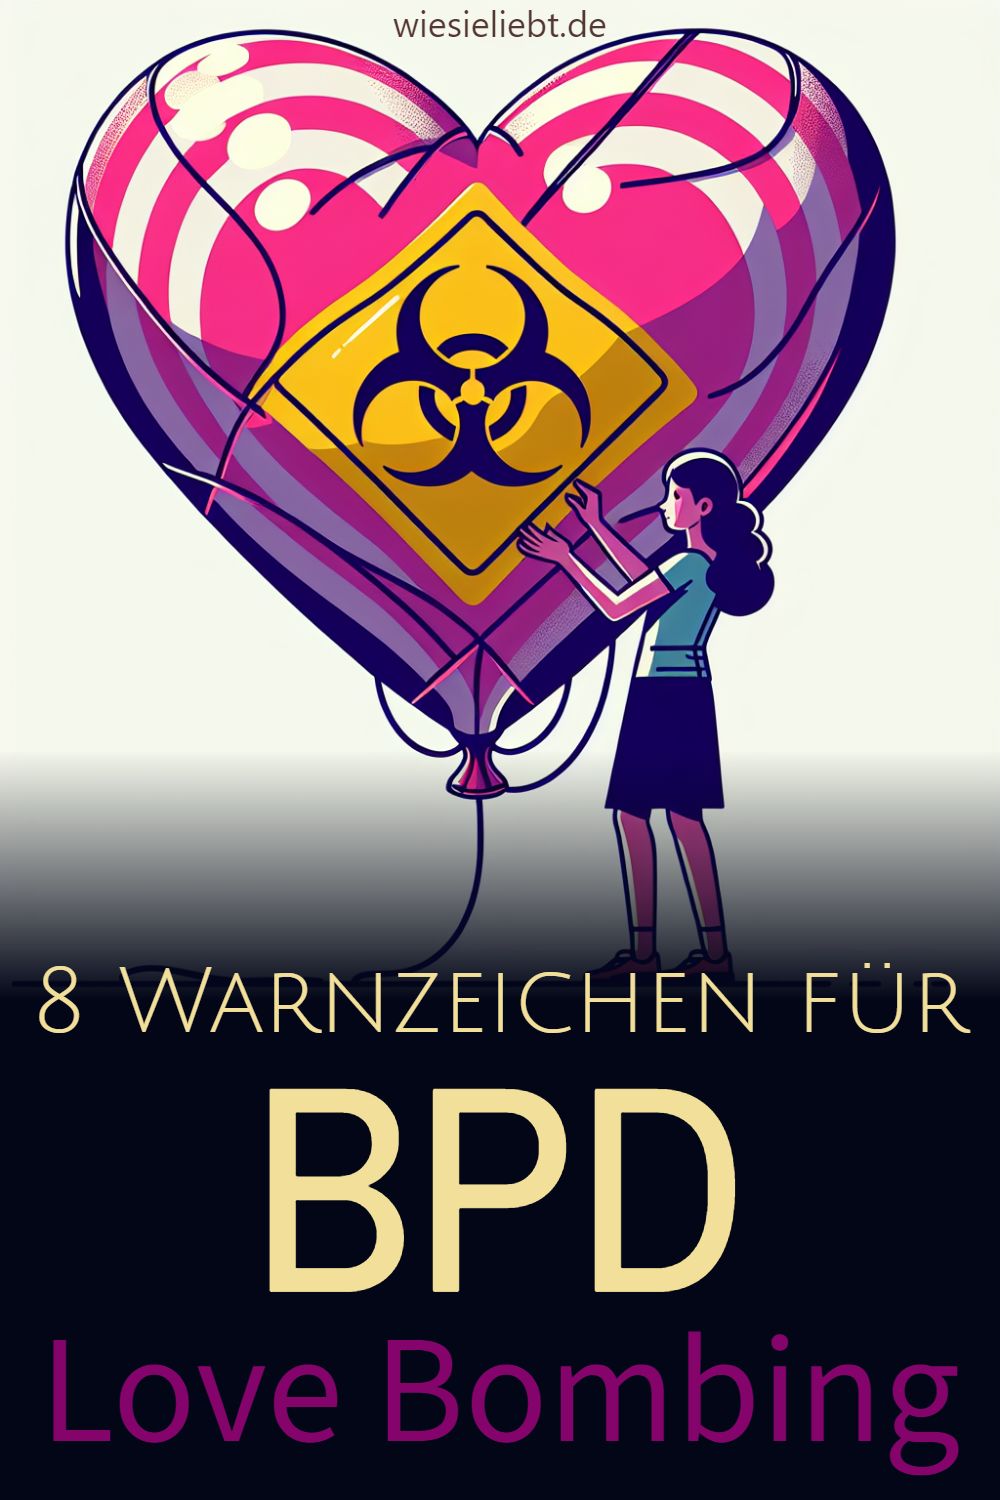 8 Warnzeichen für BPD Love Bombing